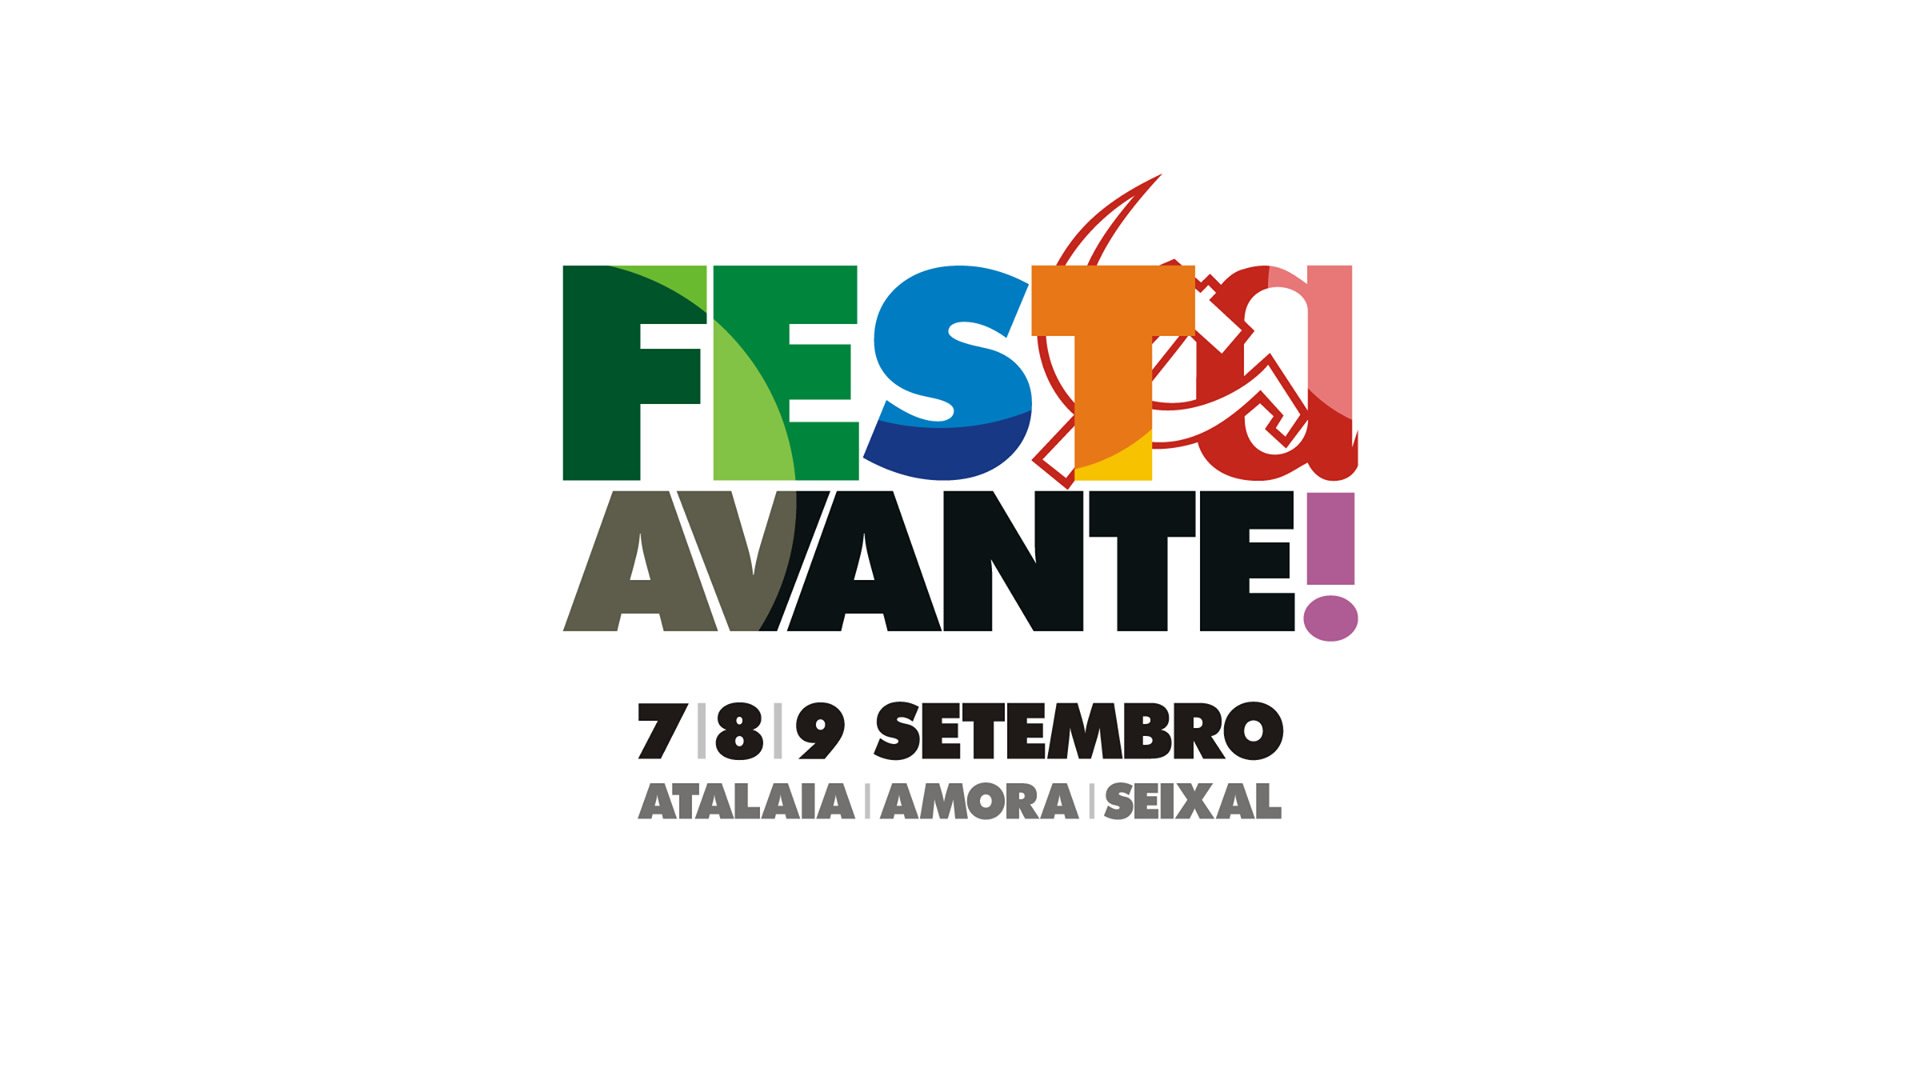 Festa do Avante! 2018 - 7, 8 e 9 de Setembro - Atalaia | Amora | Seixal